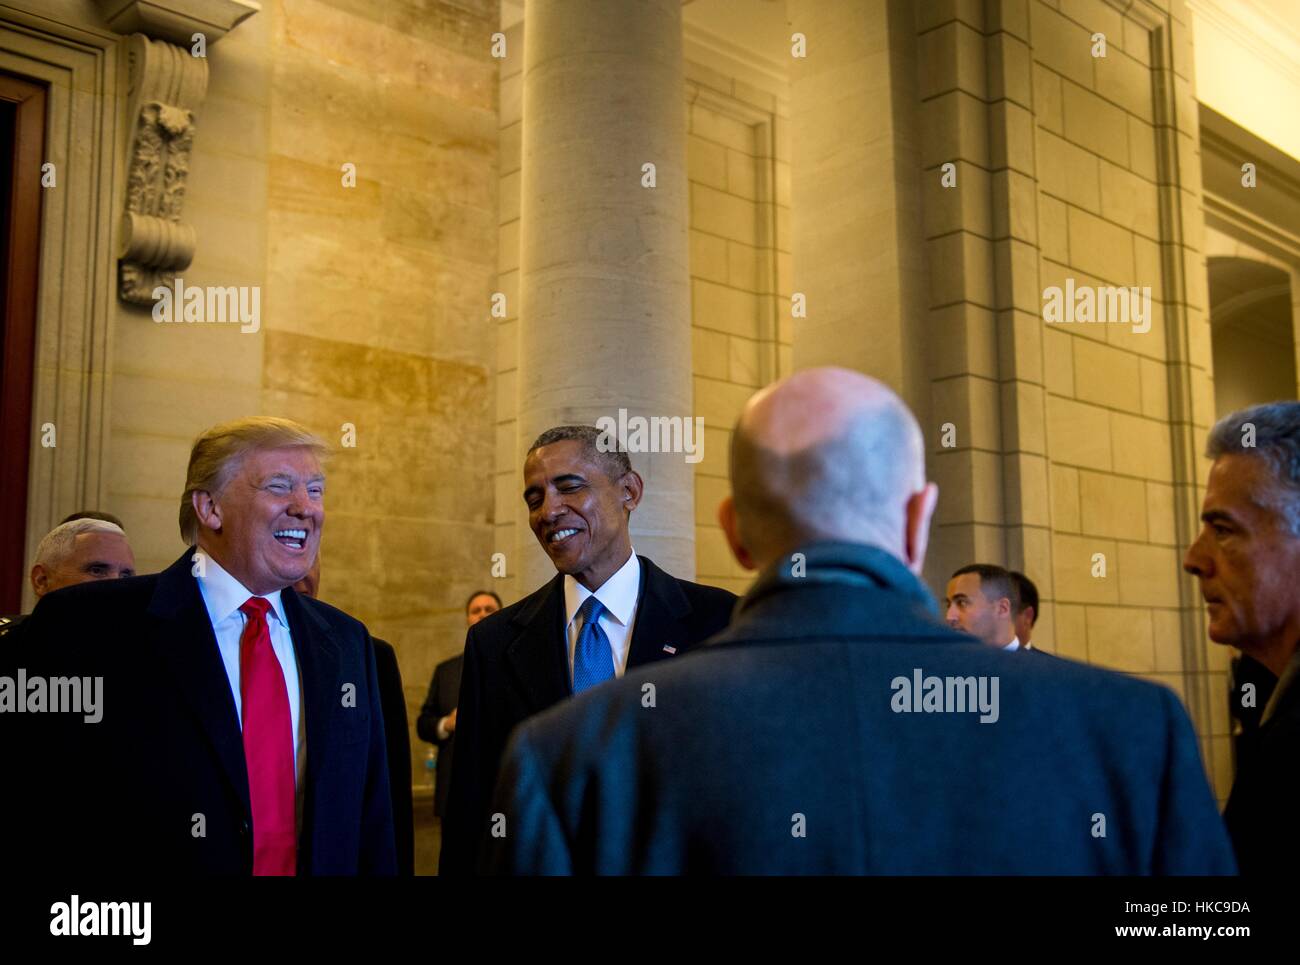 US-Präsident Donald Trump und ehemaliger Präsident Barack Obama zum Lachen, als sie den Kopf in Richtung Osten Schritte auf dem US-Kapitol für die Abschiedszeremonie während der 58. Presidential Inauguration 20. Januar 2017 in Washington, DC. Stockfoto